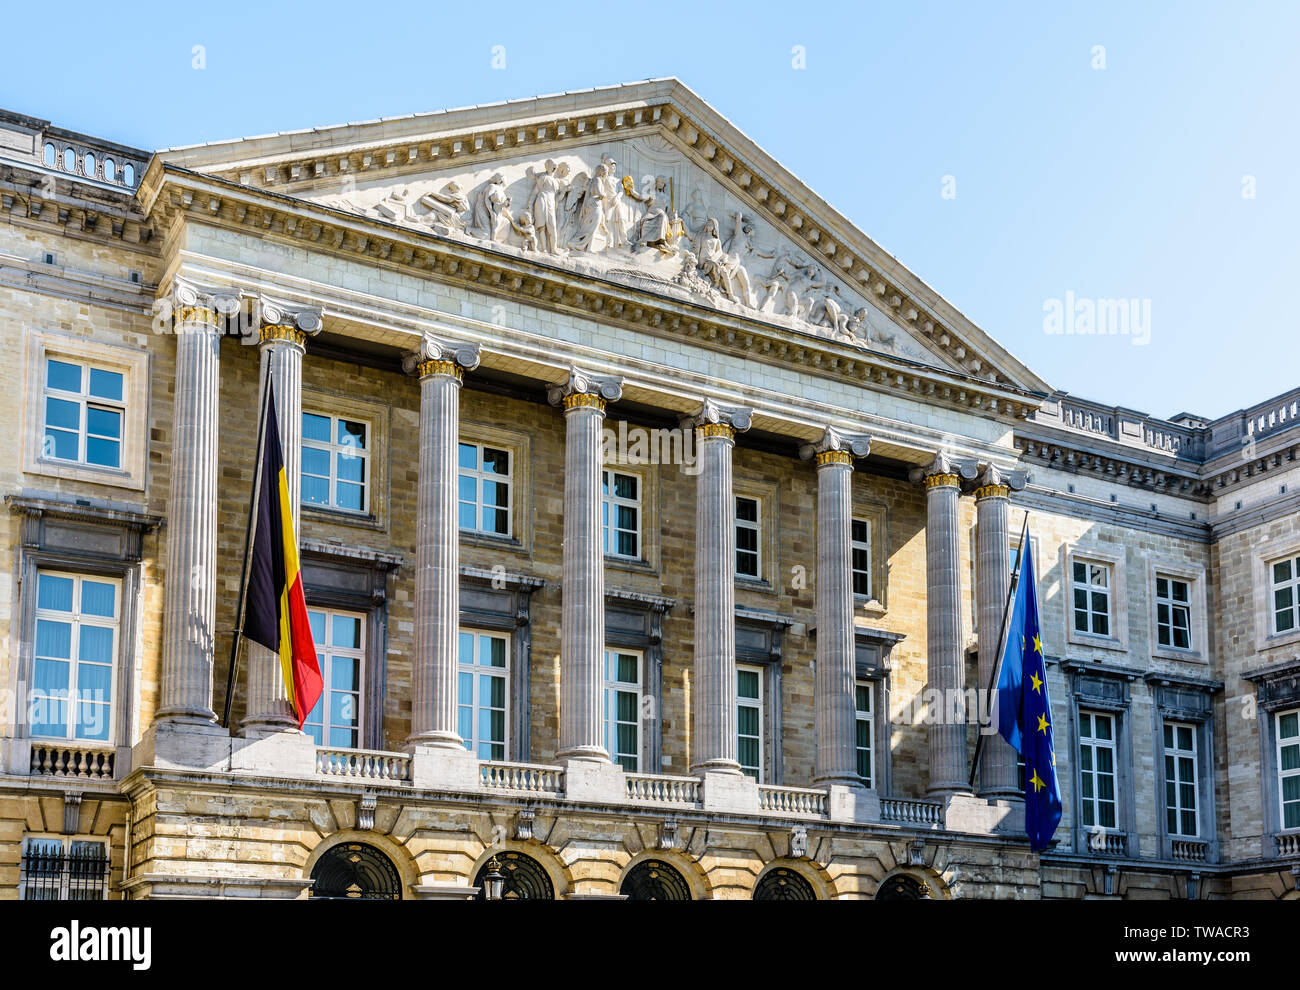 Drei Viertel Vorderansicht der Palast der Nation, dem Sitz des belgischen föderalen Parlaments in Brüssel, Belgien. Stockfoto